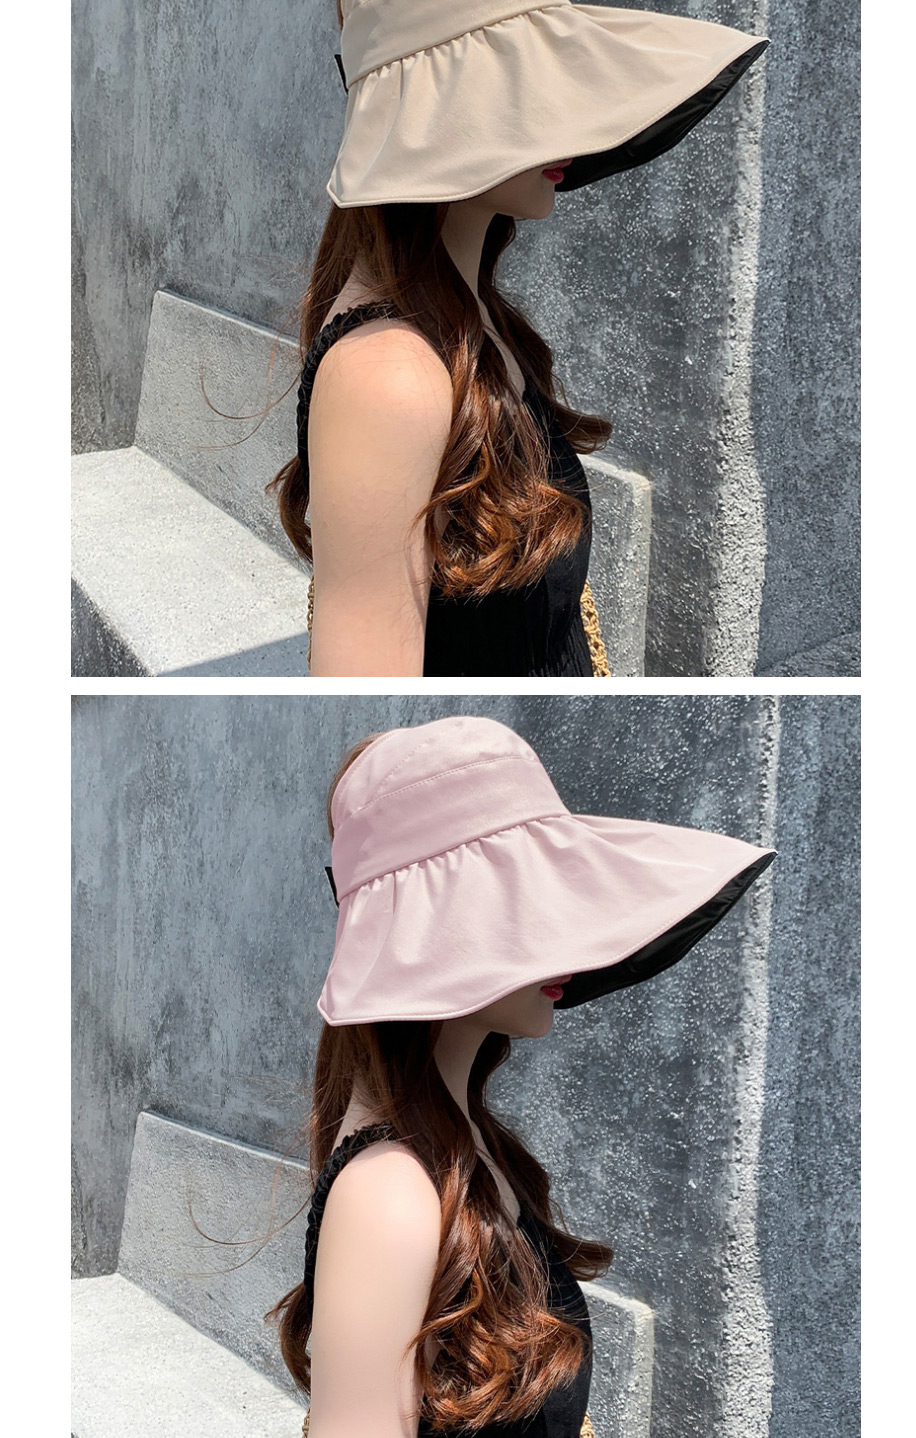 Fashion Shell Hat Beige Large-brimmed Black Rubber Sunshade Sun Hat,Sun Hats